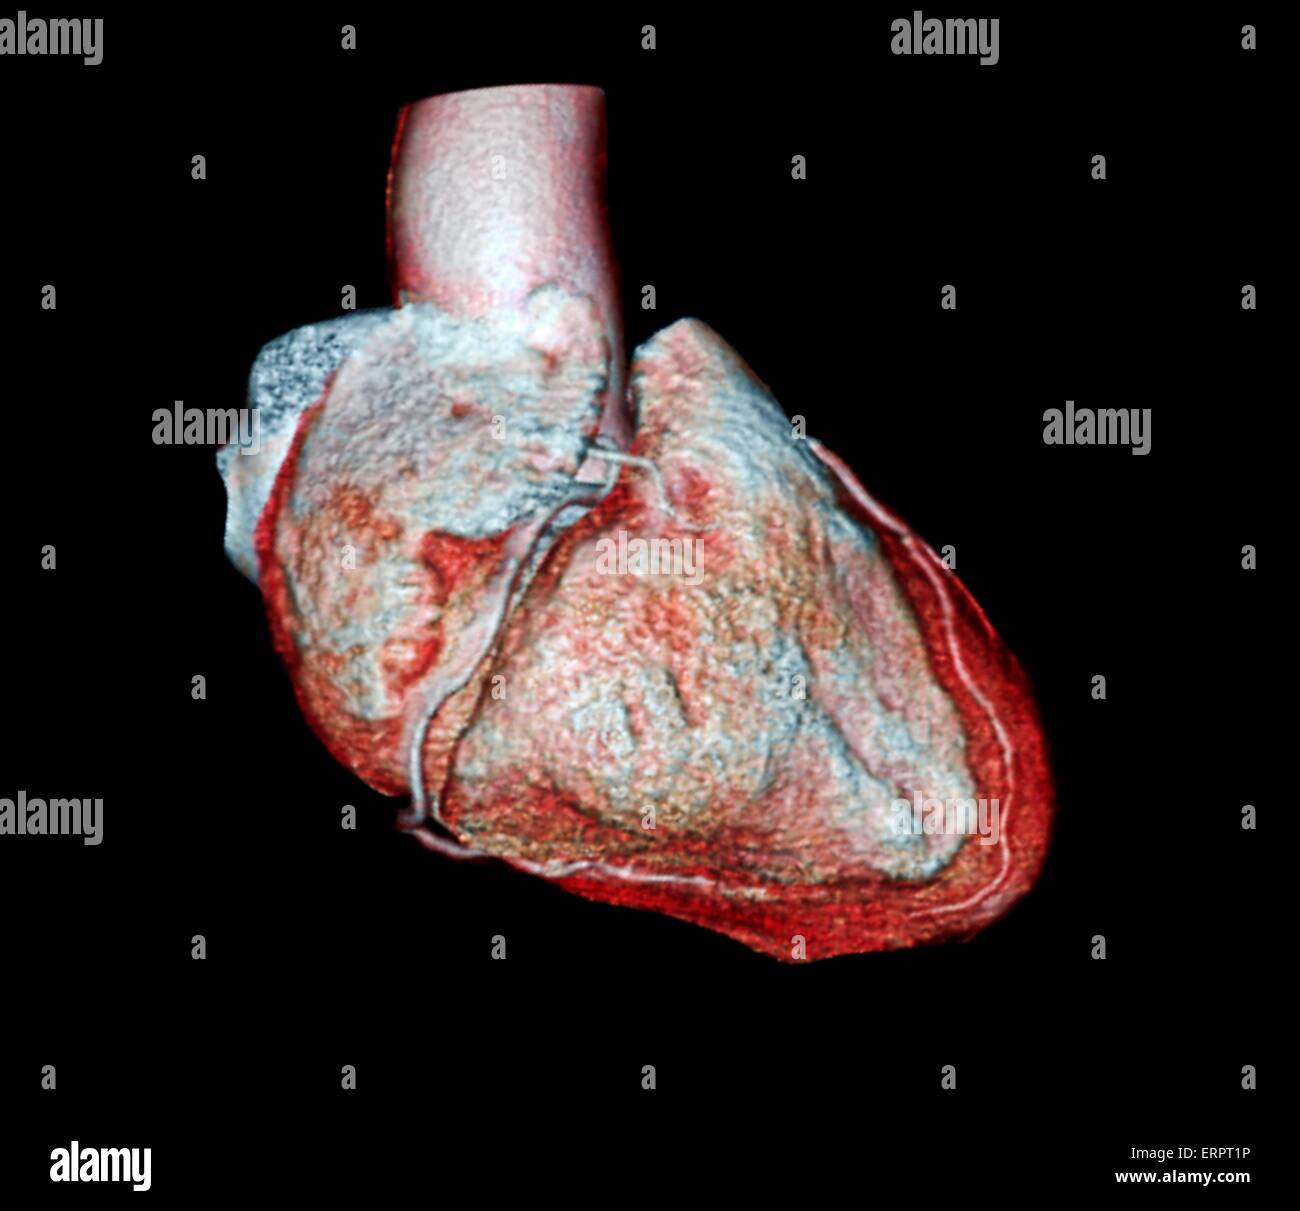 Colorato 3D la tomografia computerizzata (CT) Scansione del cuore di un 54 anno vecchio paziente. La coronaria destra (bianco) è visto dal centro, mentre la sezione anteriore arteria interventricolare (bianco) è visto che corre lungo il bordo di mano destra del cuore. Questo paziente Foto Stock